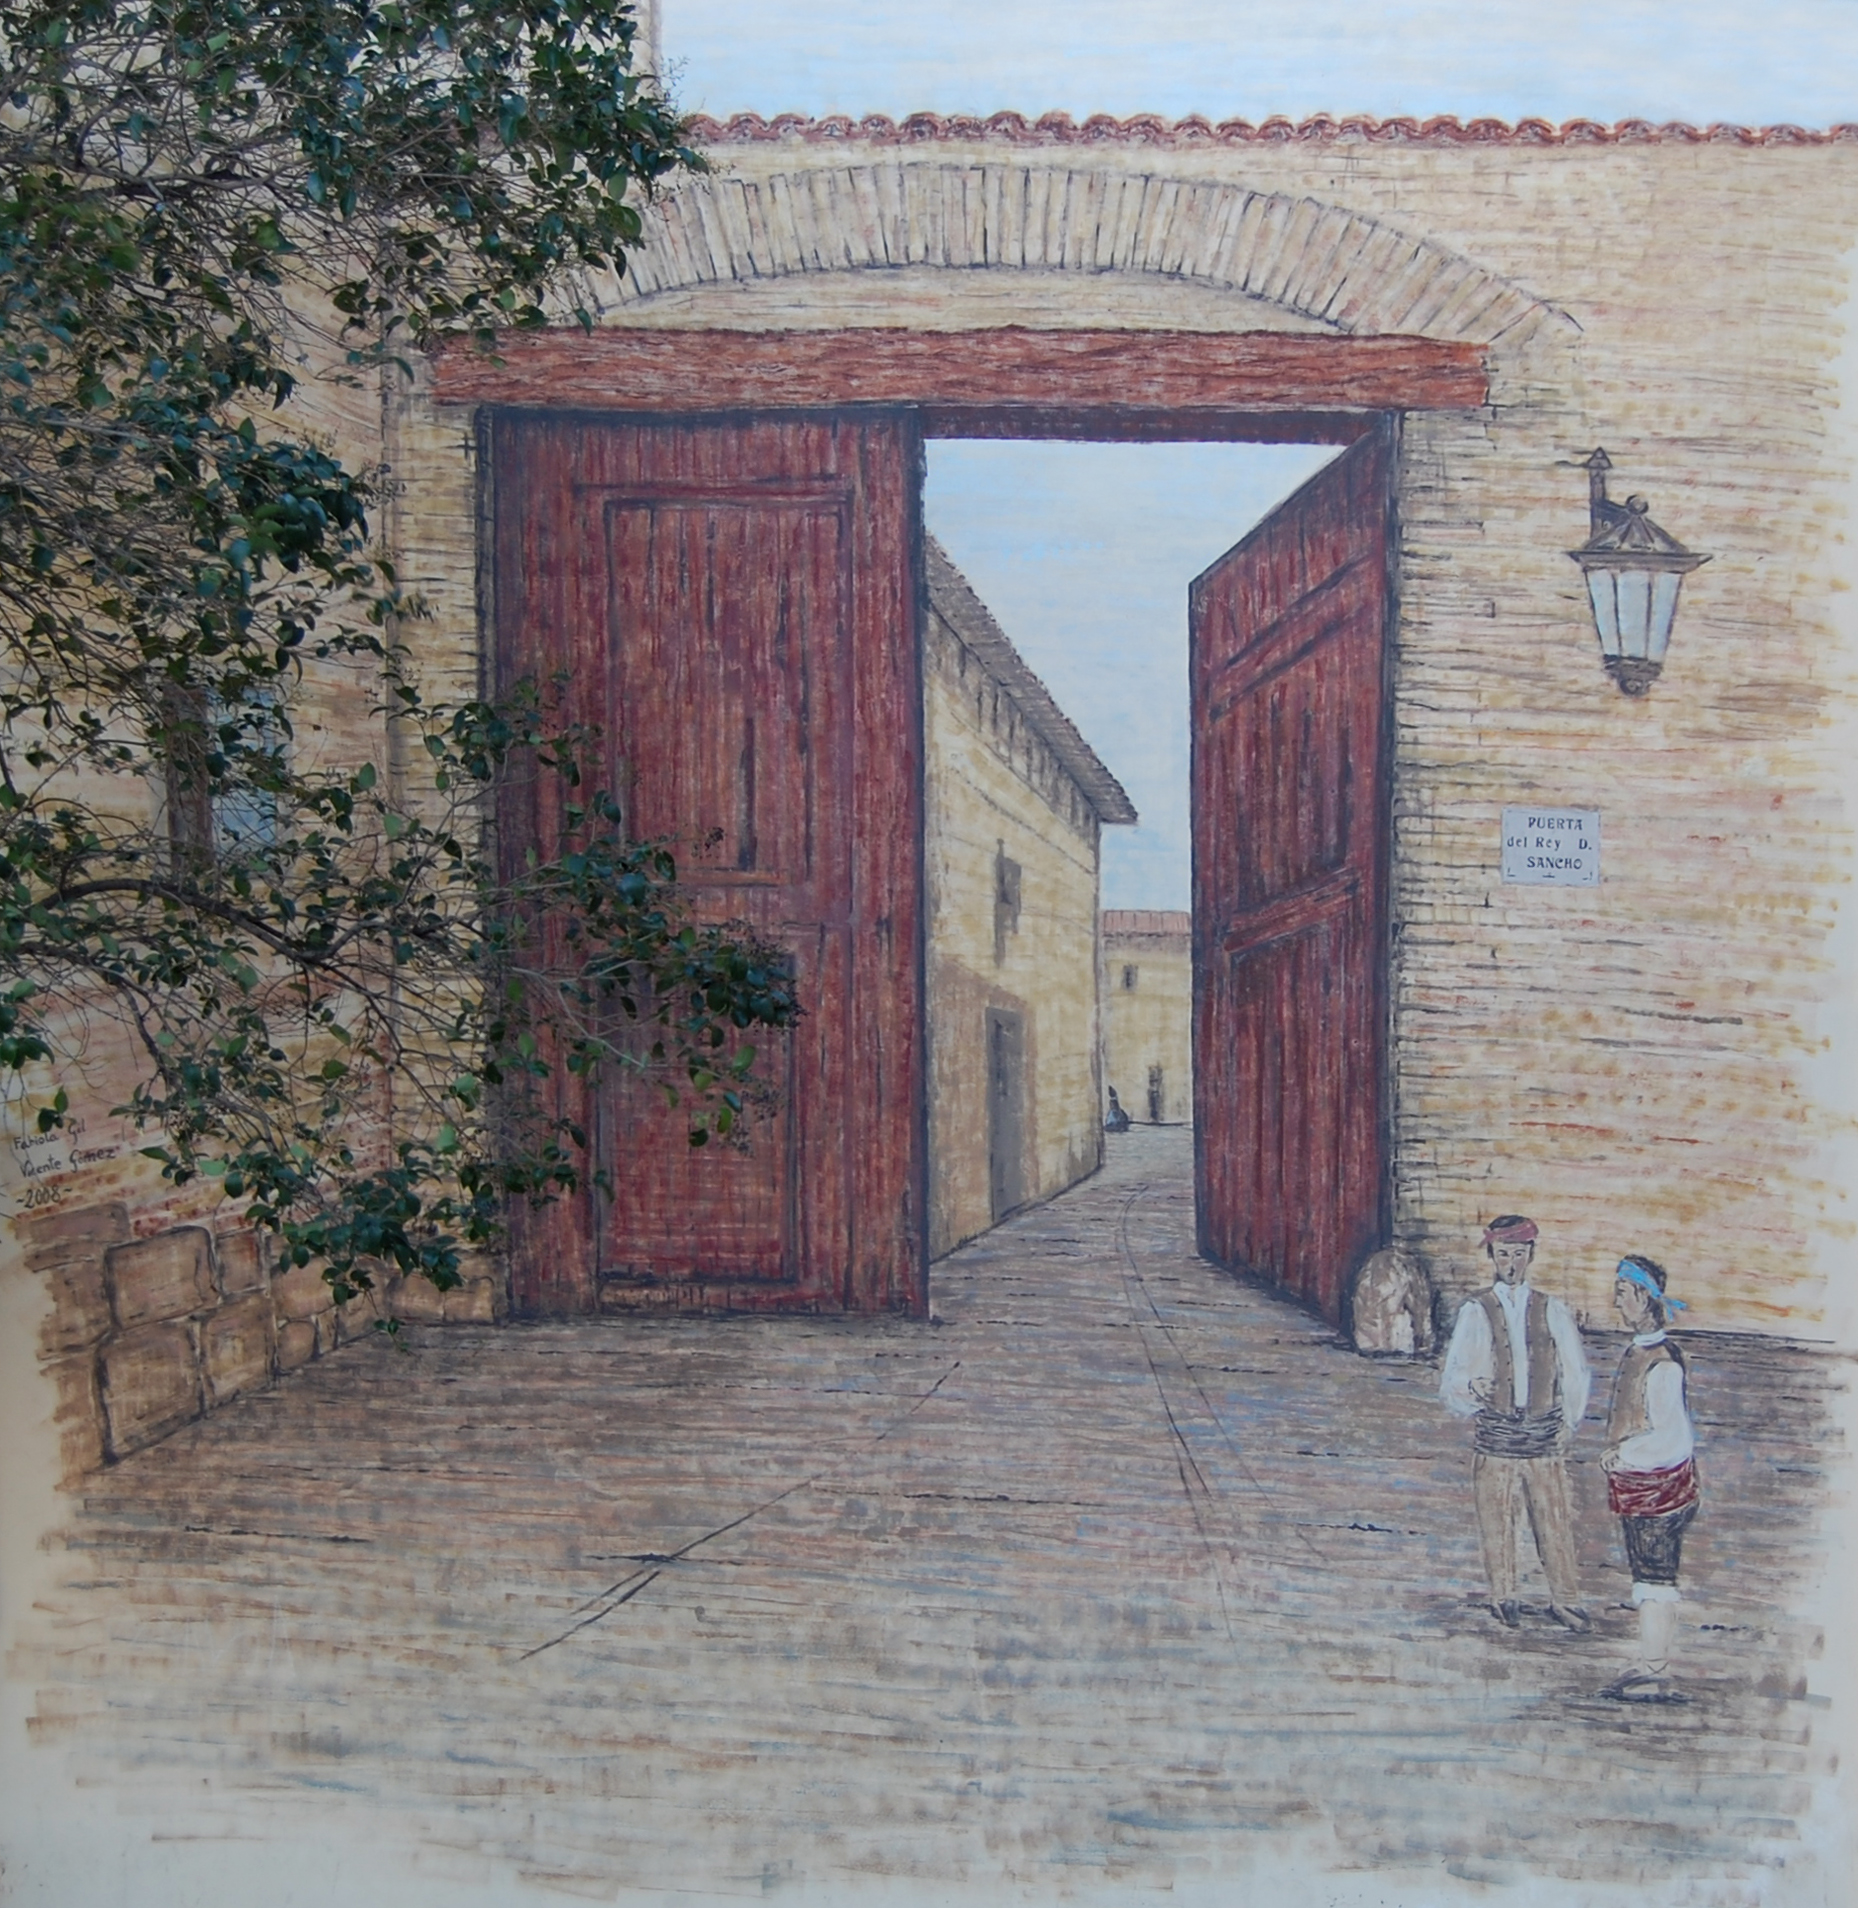 Puerta de Sancho - Biquipedia, a enciclopedia libre